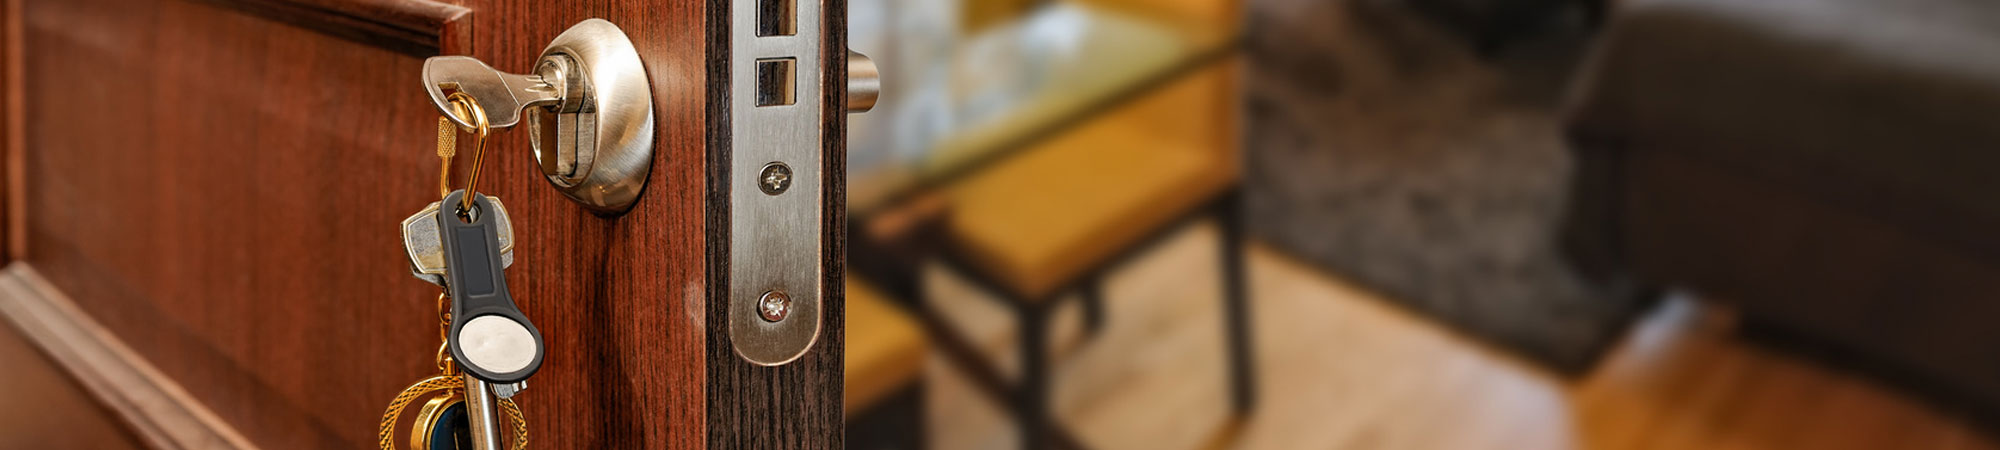 Keys in wooden door